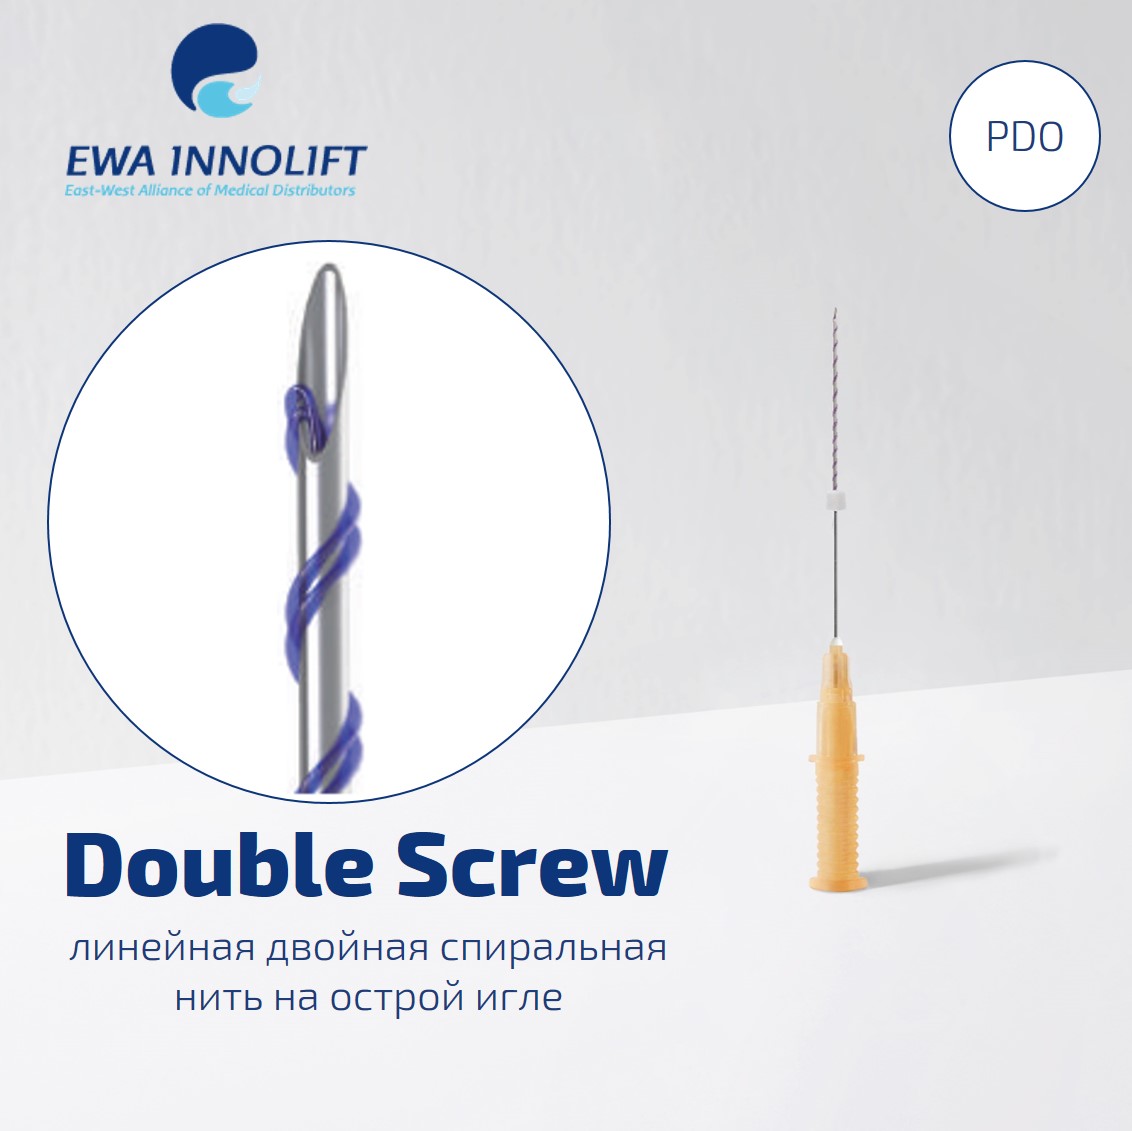 Нить из полидиоксанона обычная на полой игле Двойная спираль / Double Screw (Sharp Needle) PDO